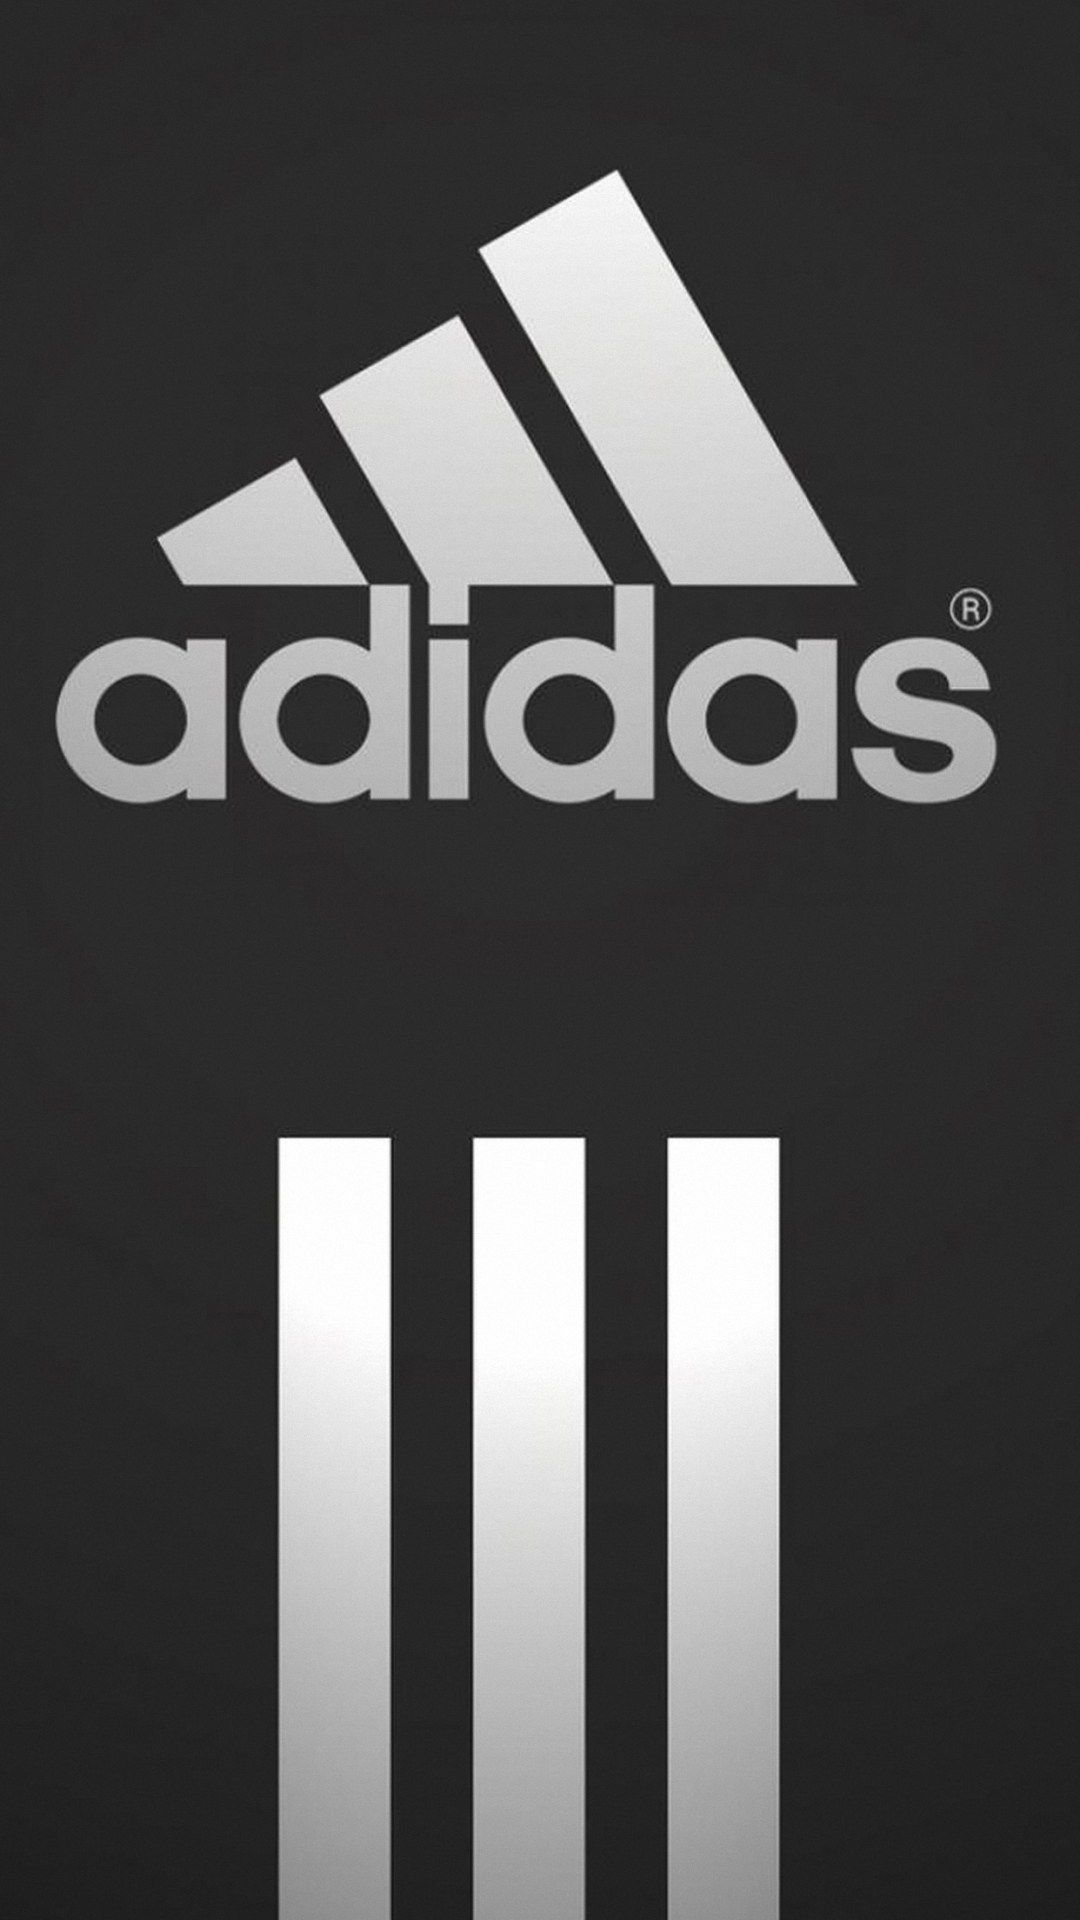 Orange Adidas Logo iPhone Wallpapers on WallpaperDog